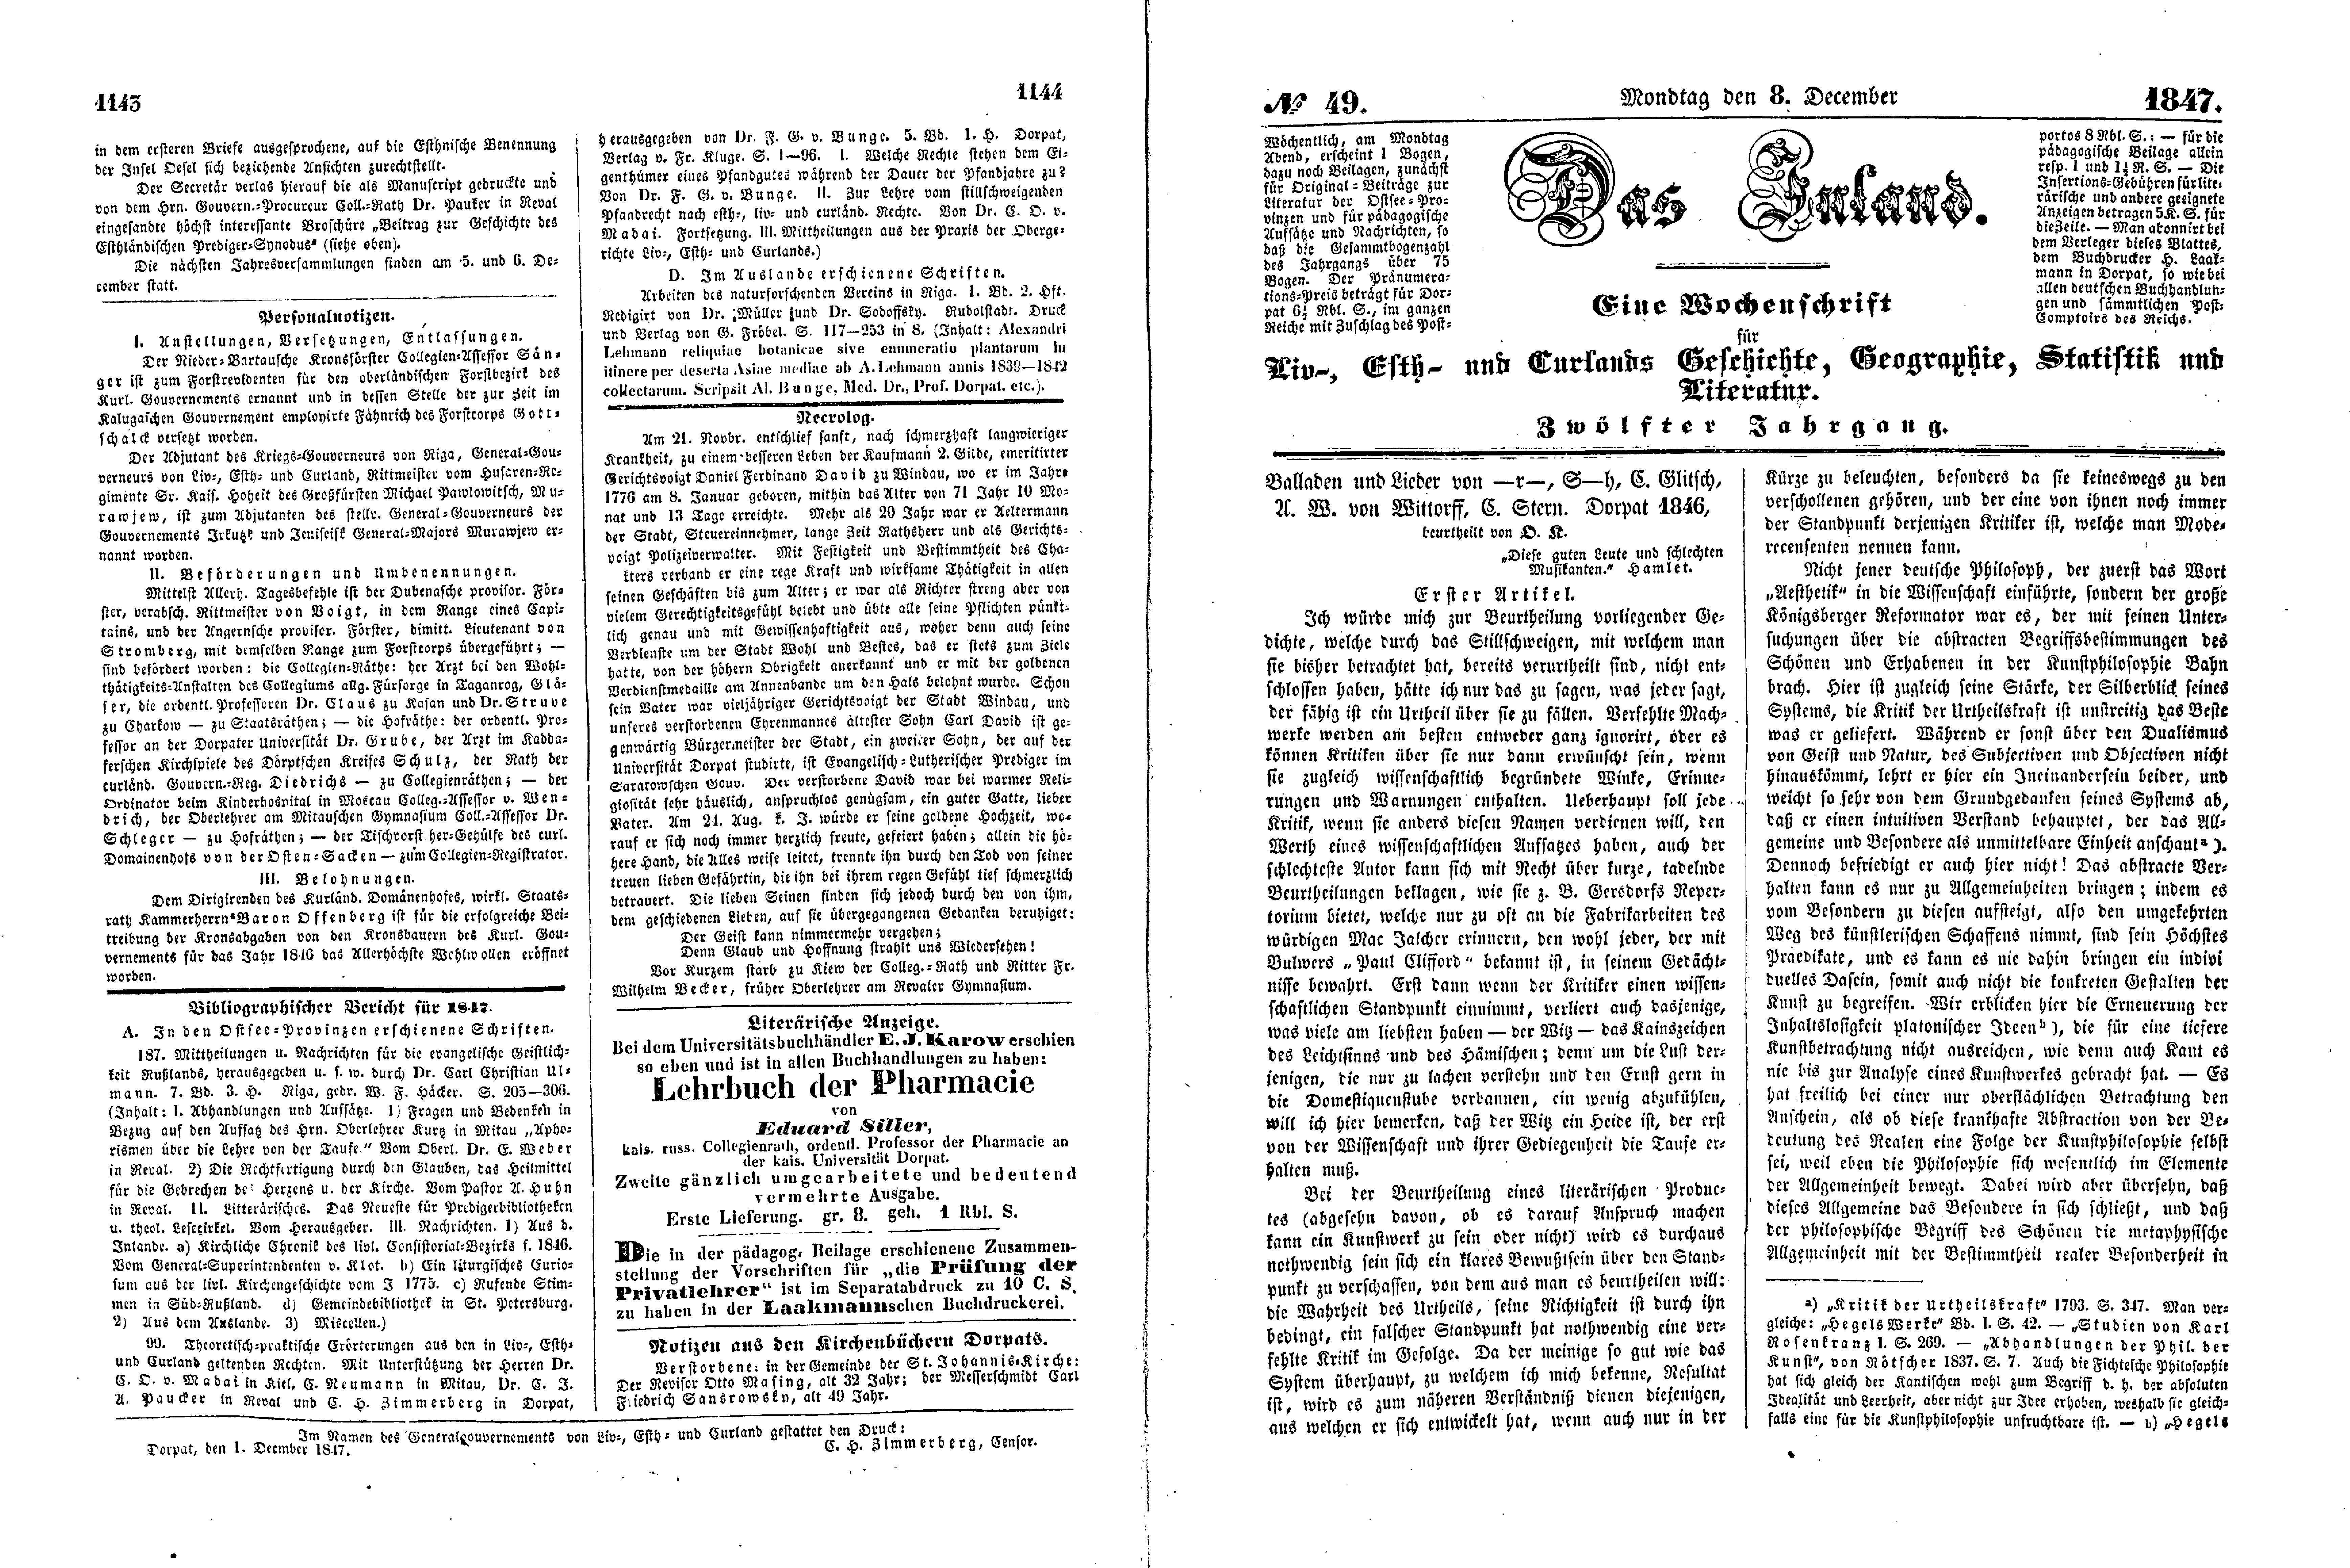 Balladen und Lieder von -r-, S-h, C. Glitsch, A. W. von Wittorff, C. Stern (1847) | 1. (1143-1146) Основной текст